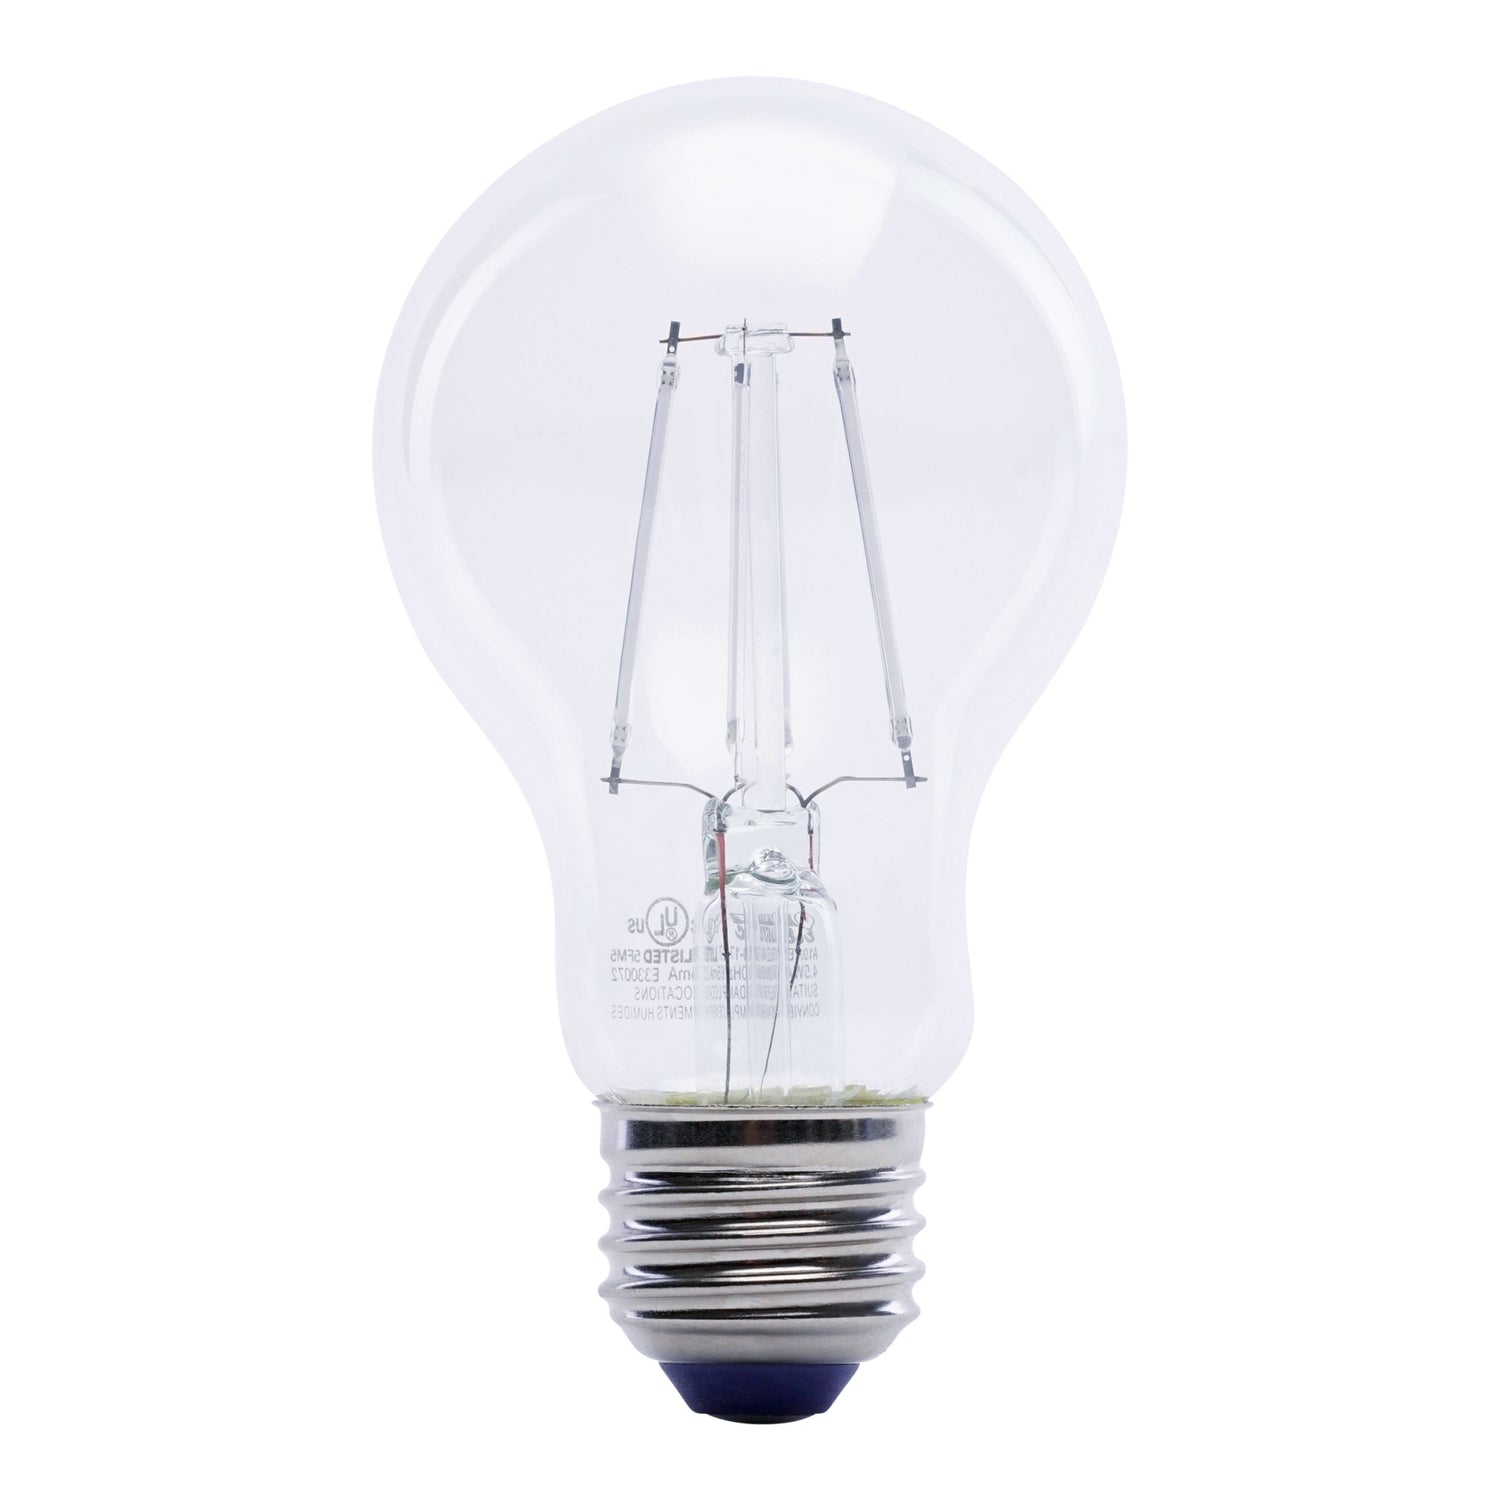 4.5W A19 Blue LED Filament Light Bulb